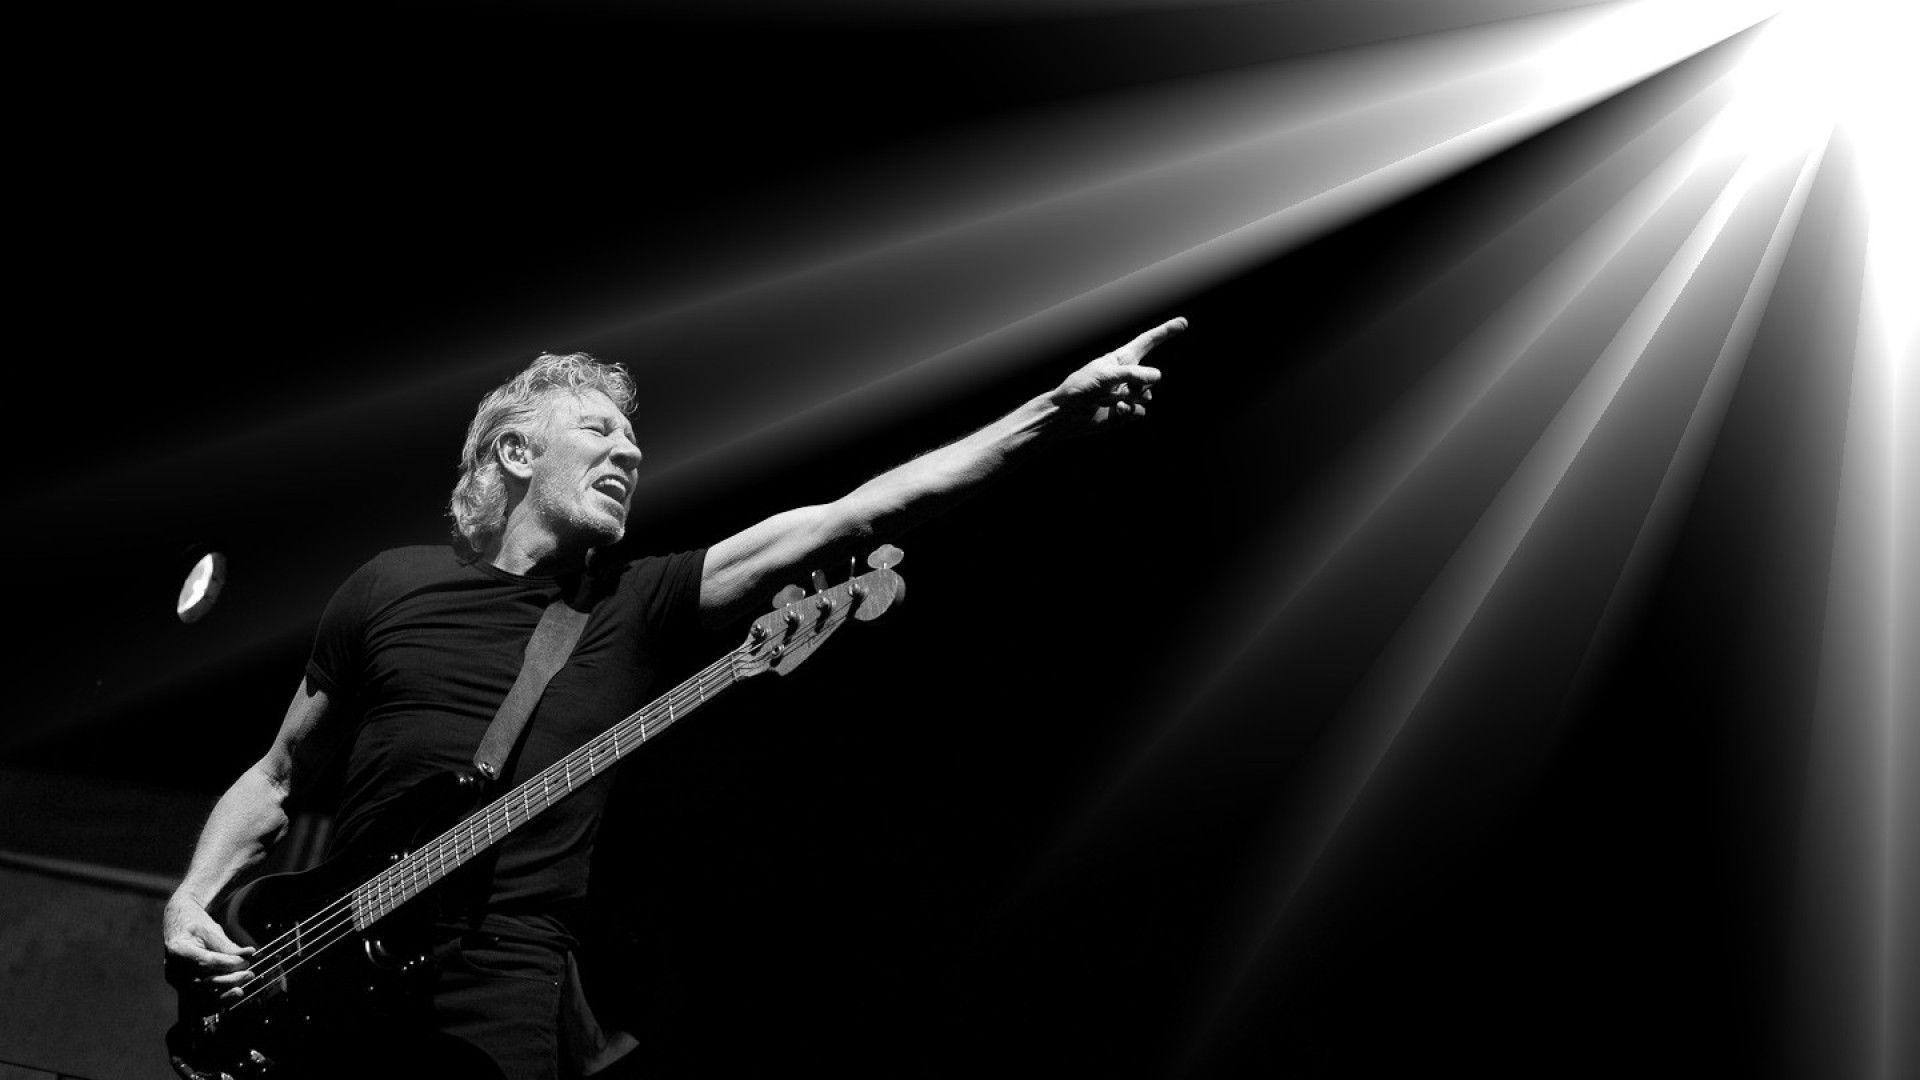 Roger Waters emprenderá acciones legales, luego de que sus conciertos en Alemania fueran cancelados